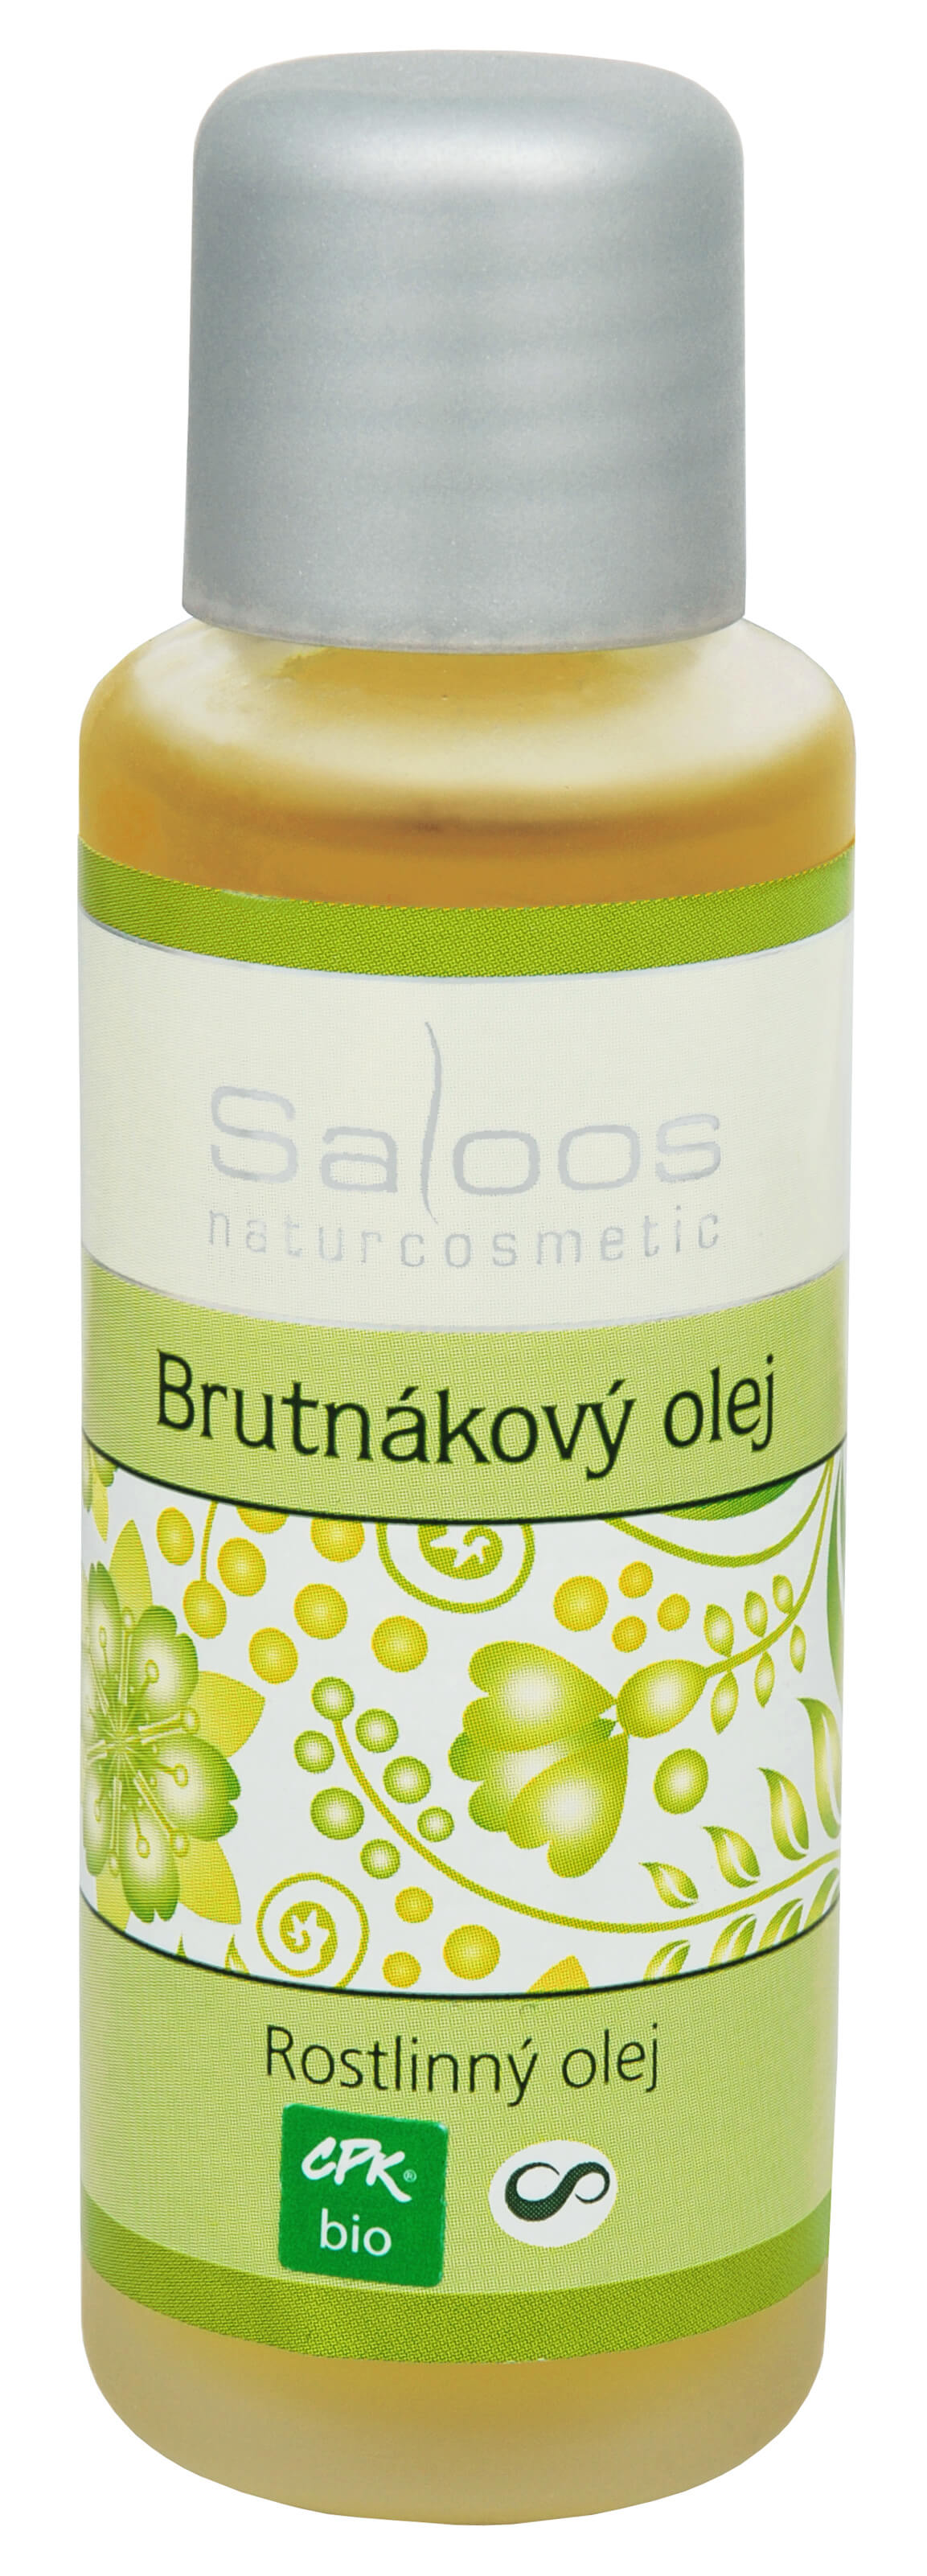 Zobrazit detail výrobku Saloos Bio Brutnákový olej lisovaný za studena 50 ml